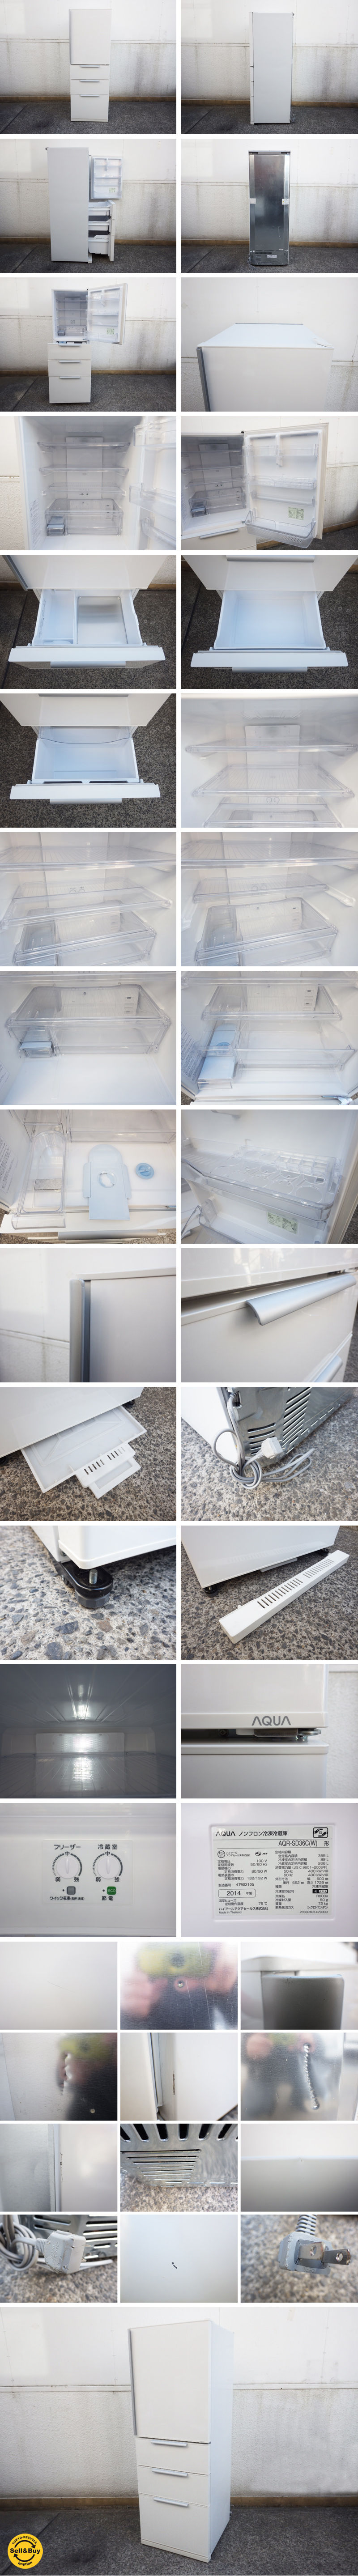 ハイアール アクア AQUA 355L ノンフロン冷凍冷蔵庫 2014年製 AQR